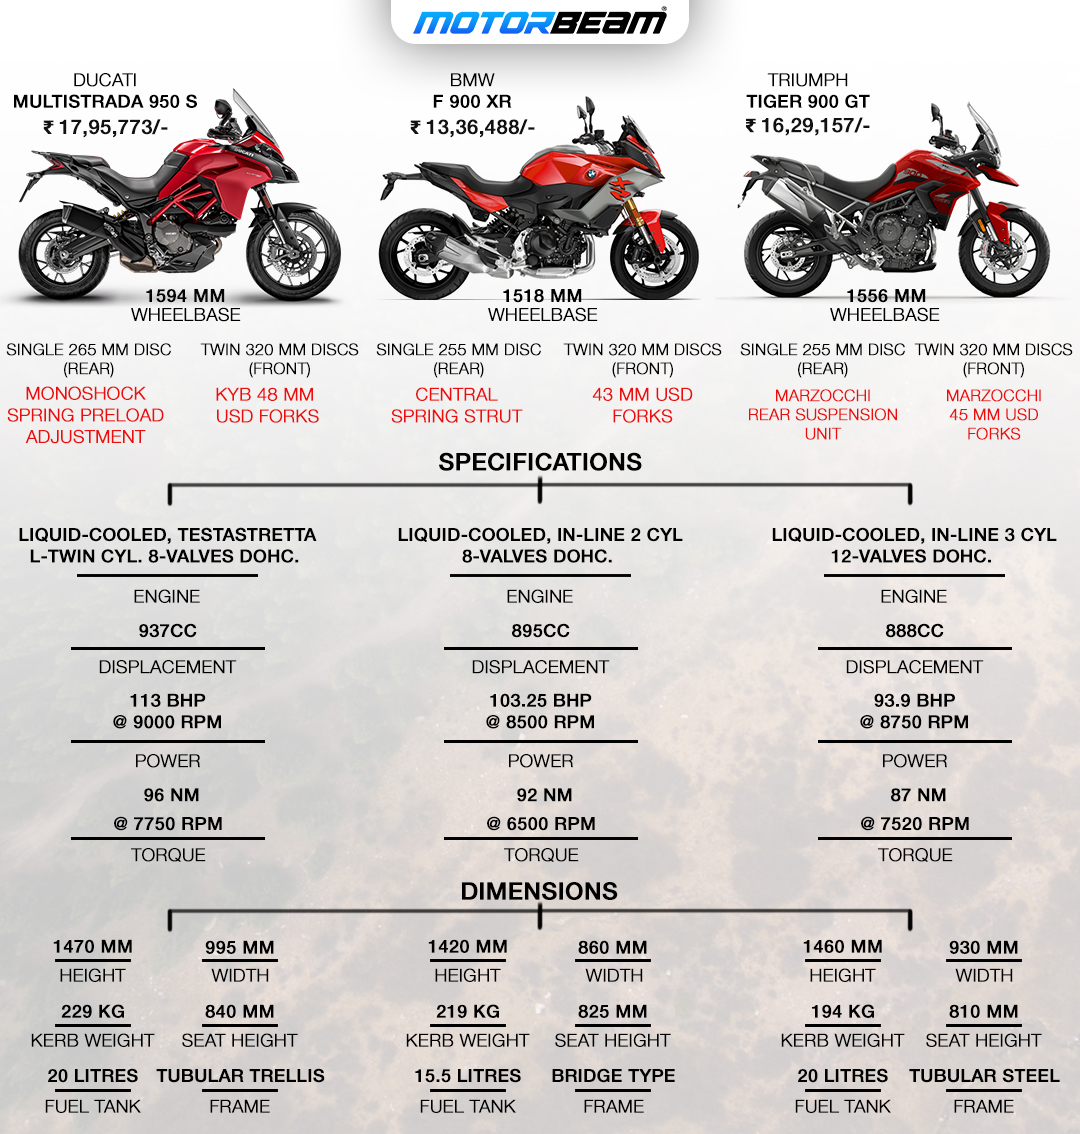 Ducati Multistrada 950 S vs BMW F 900 XR vs Triumph Tiger 900 GT - Spec Comparison